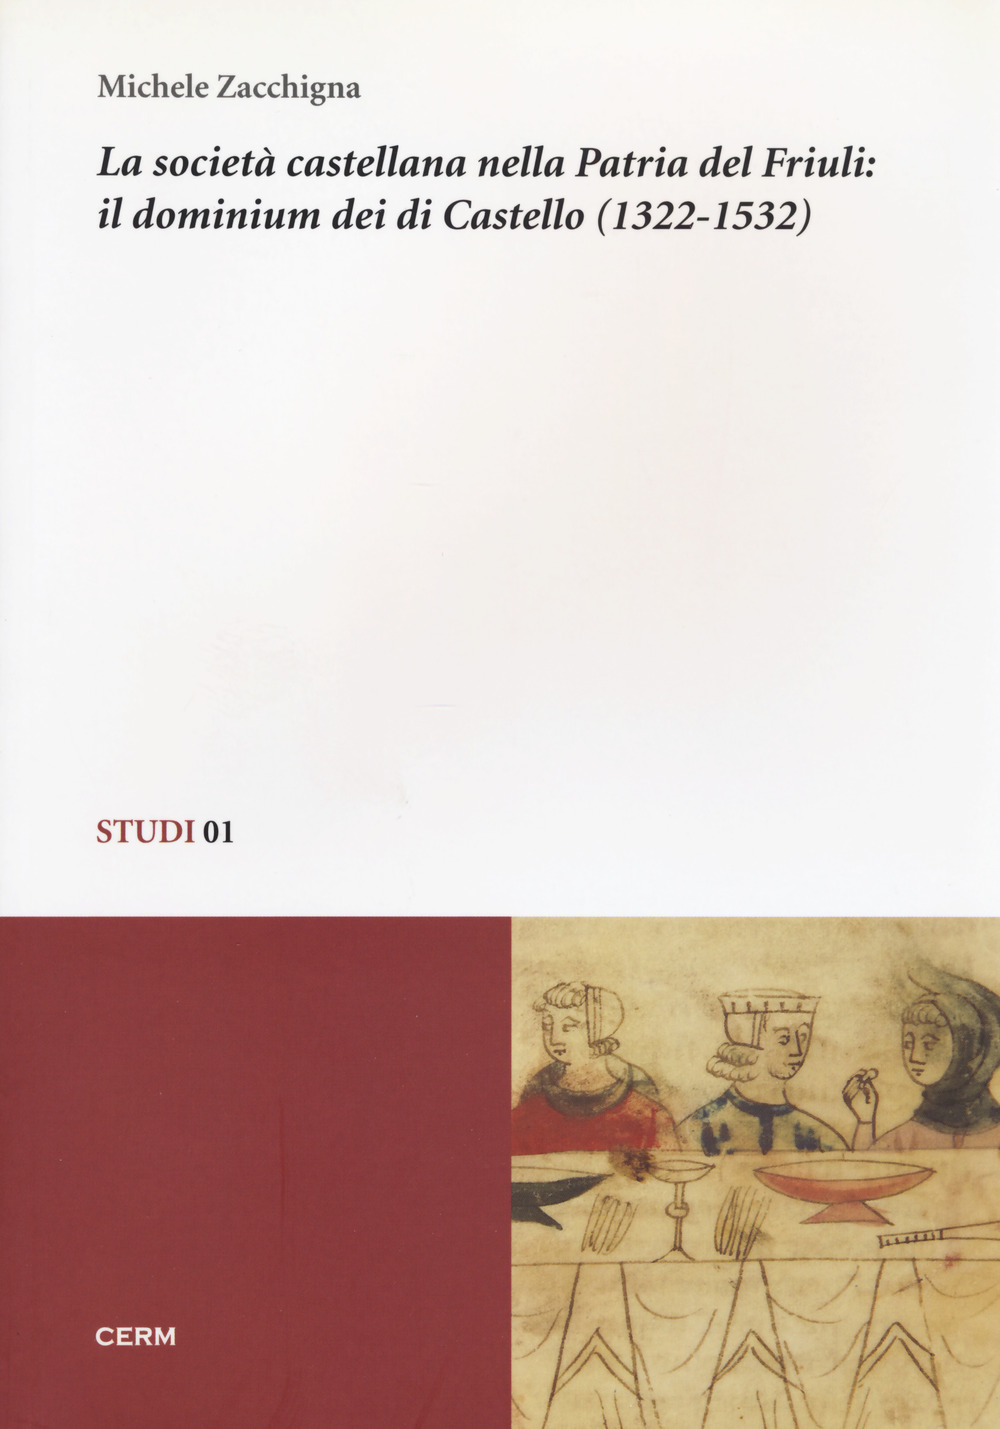 La società castellana nella patria del Friuli: il dominium dei di Castello (1322-1532)